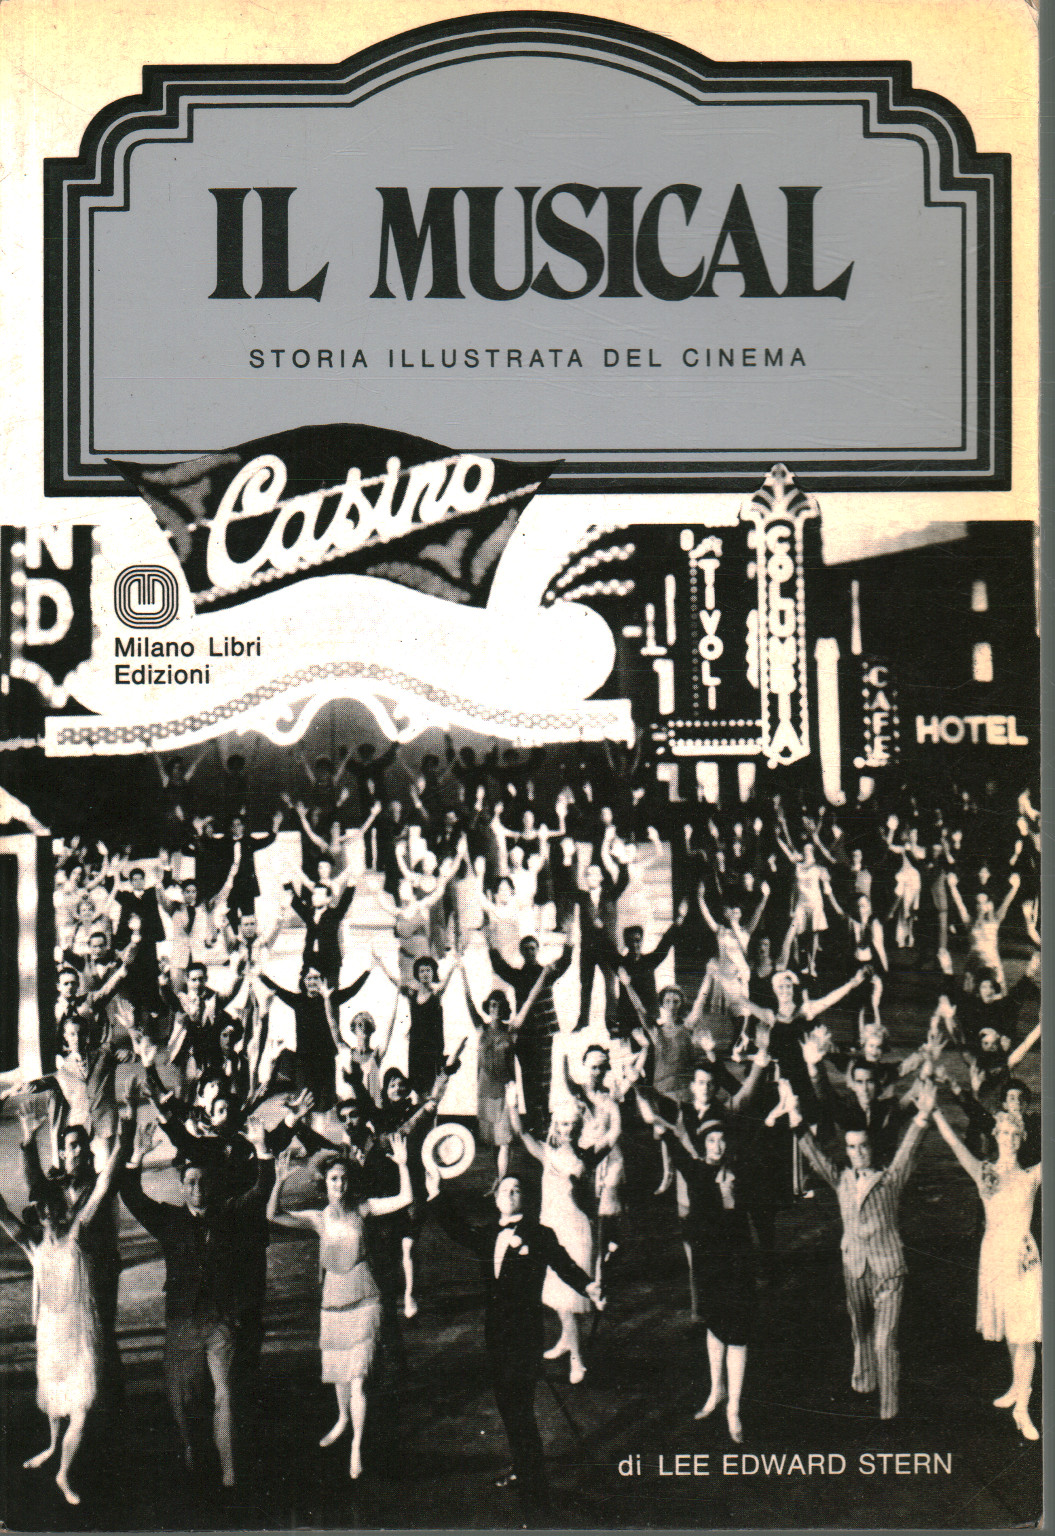 Il Musical, s.a.